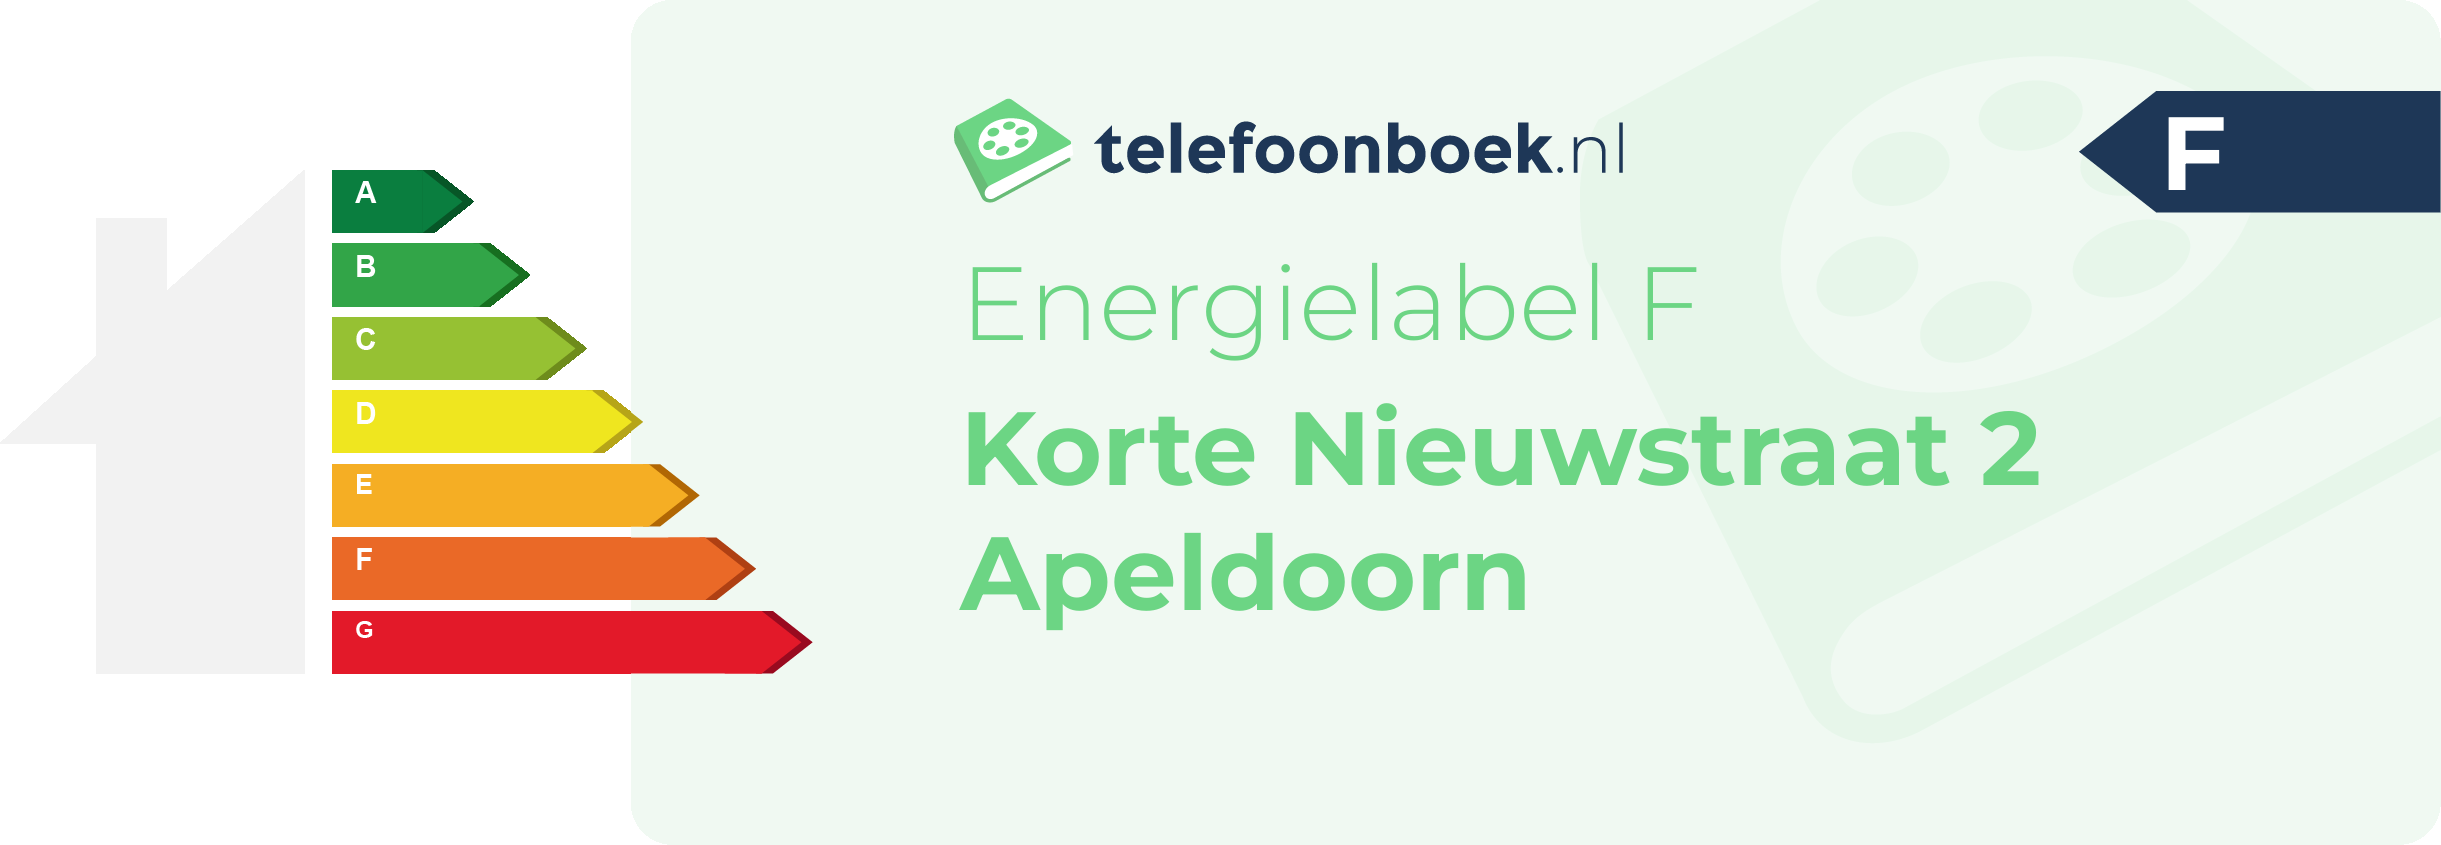 Energielabel Korte Nieuwstraat 2 Apeldoorn